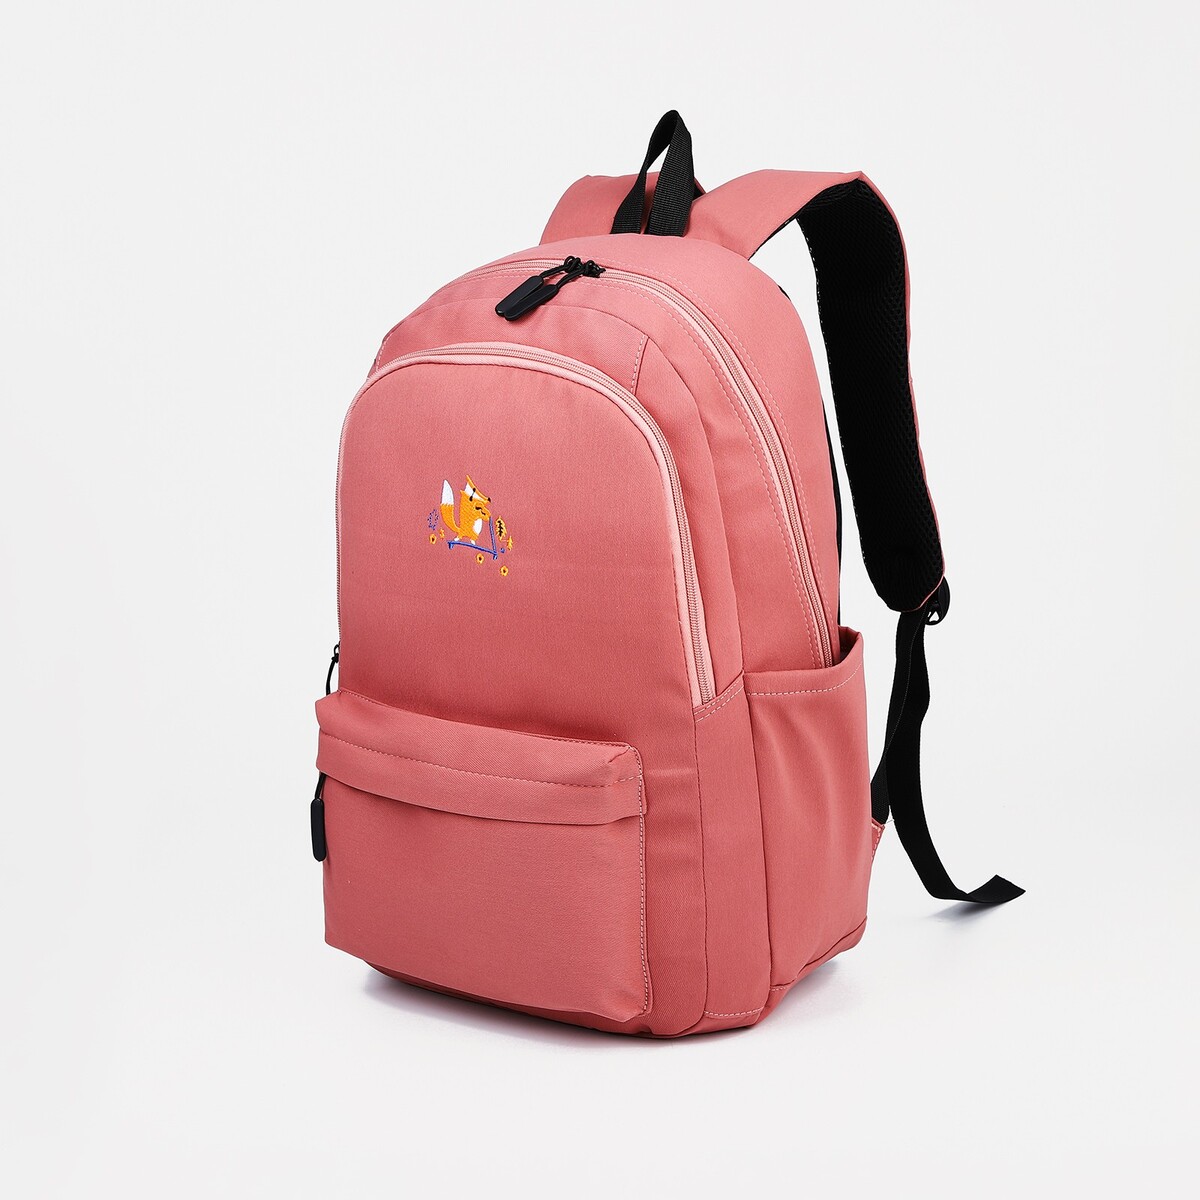 Рюкзак молодежный из текстиля, 2 отдела на молниях, 3 кармана, цвет розовый рюкзак молодежный из текстиля 3 кармана розовый